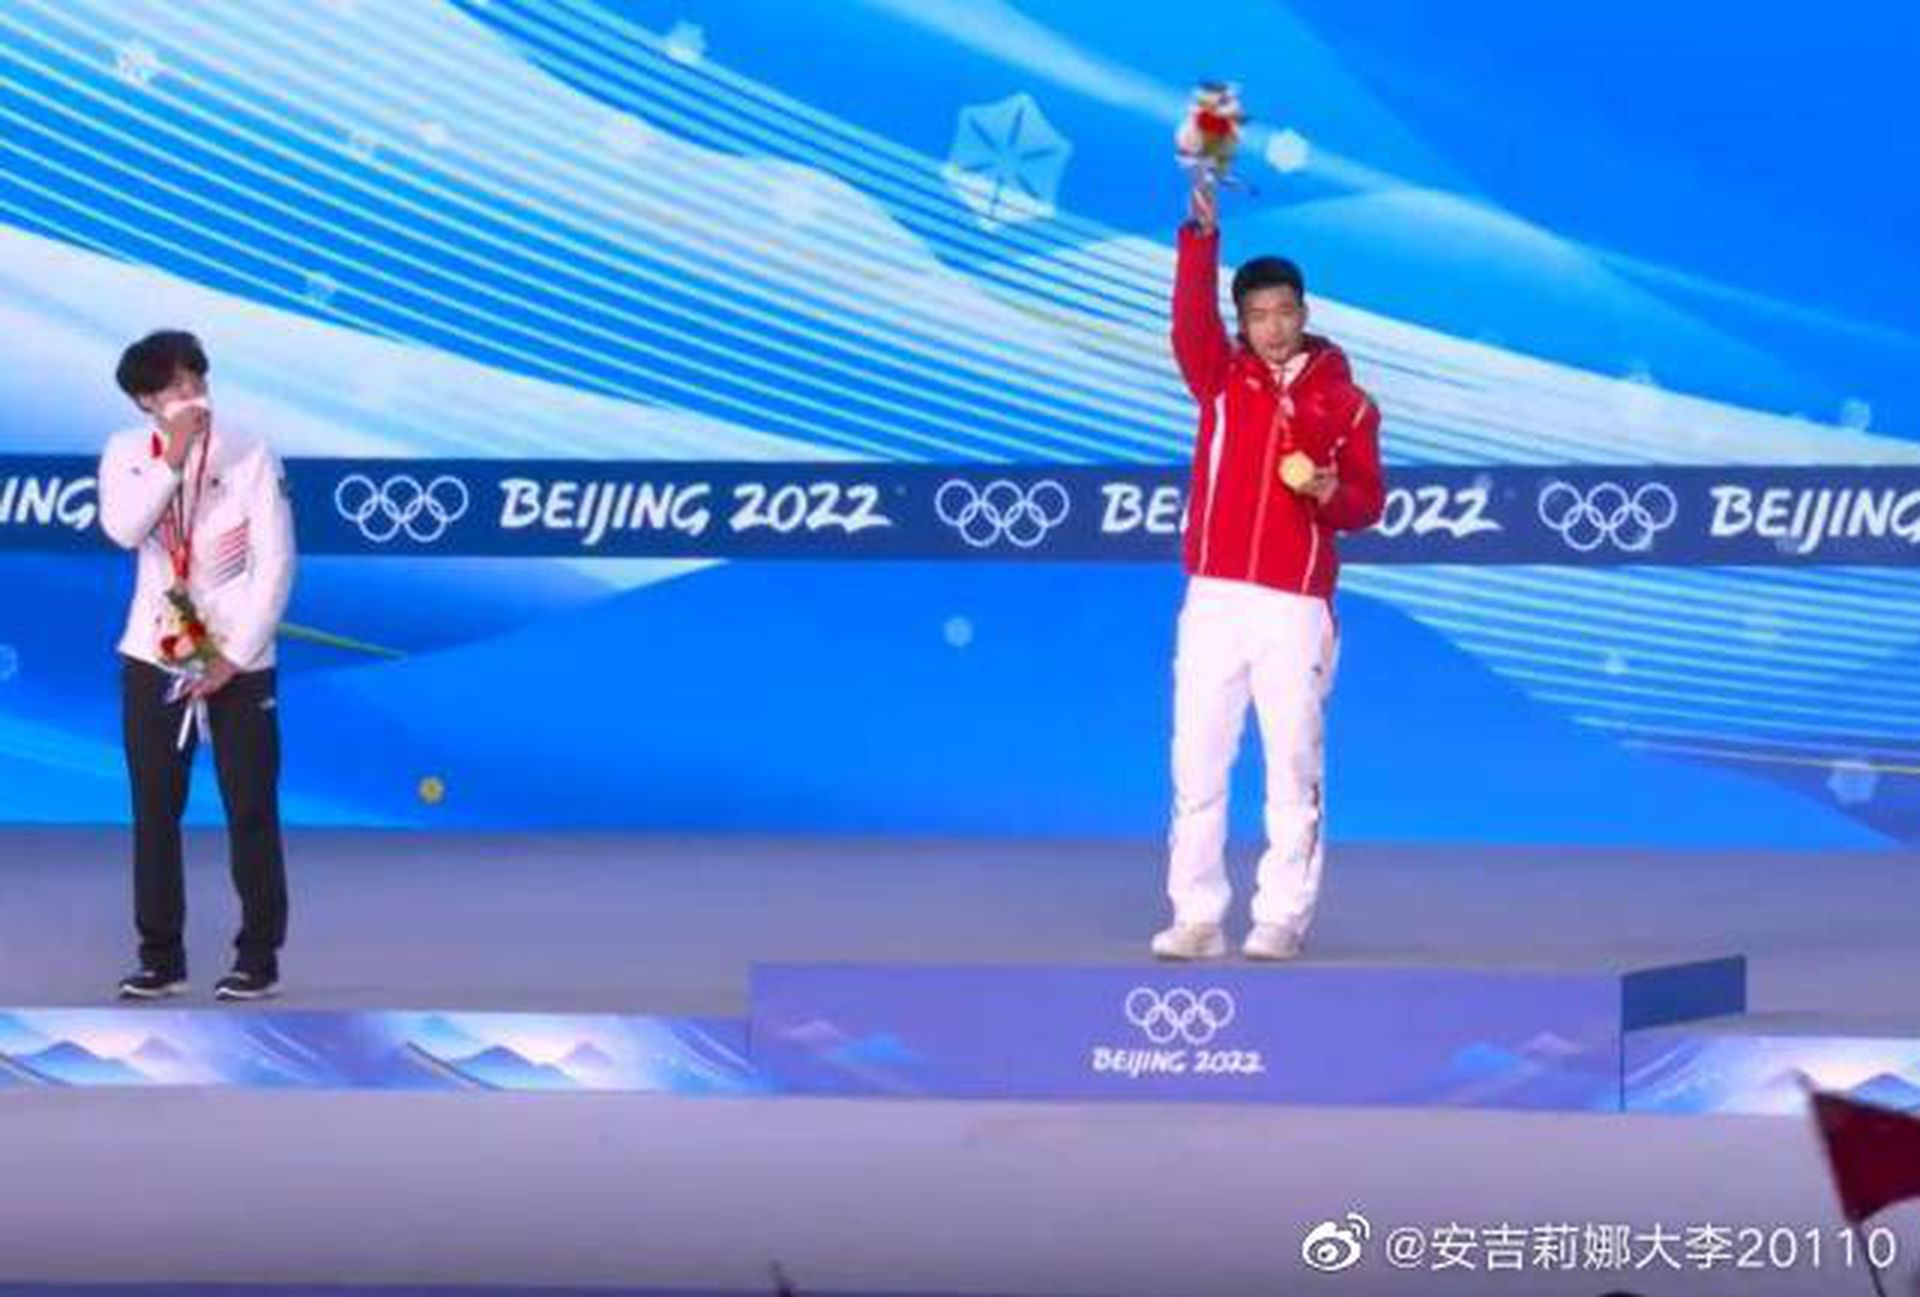 北京冬奥会速度滑冰男子500米项目揭晓冠军，中国选手高亭宇以34秒32的成绩拿到冠军，亚军是韩国选手。（微博@安吉莉娜大李20110）